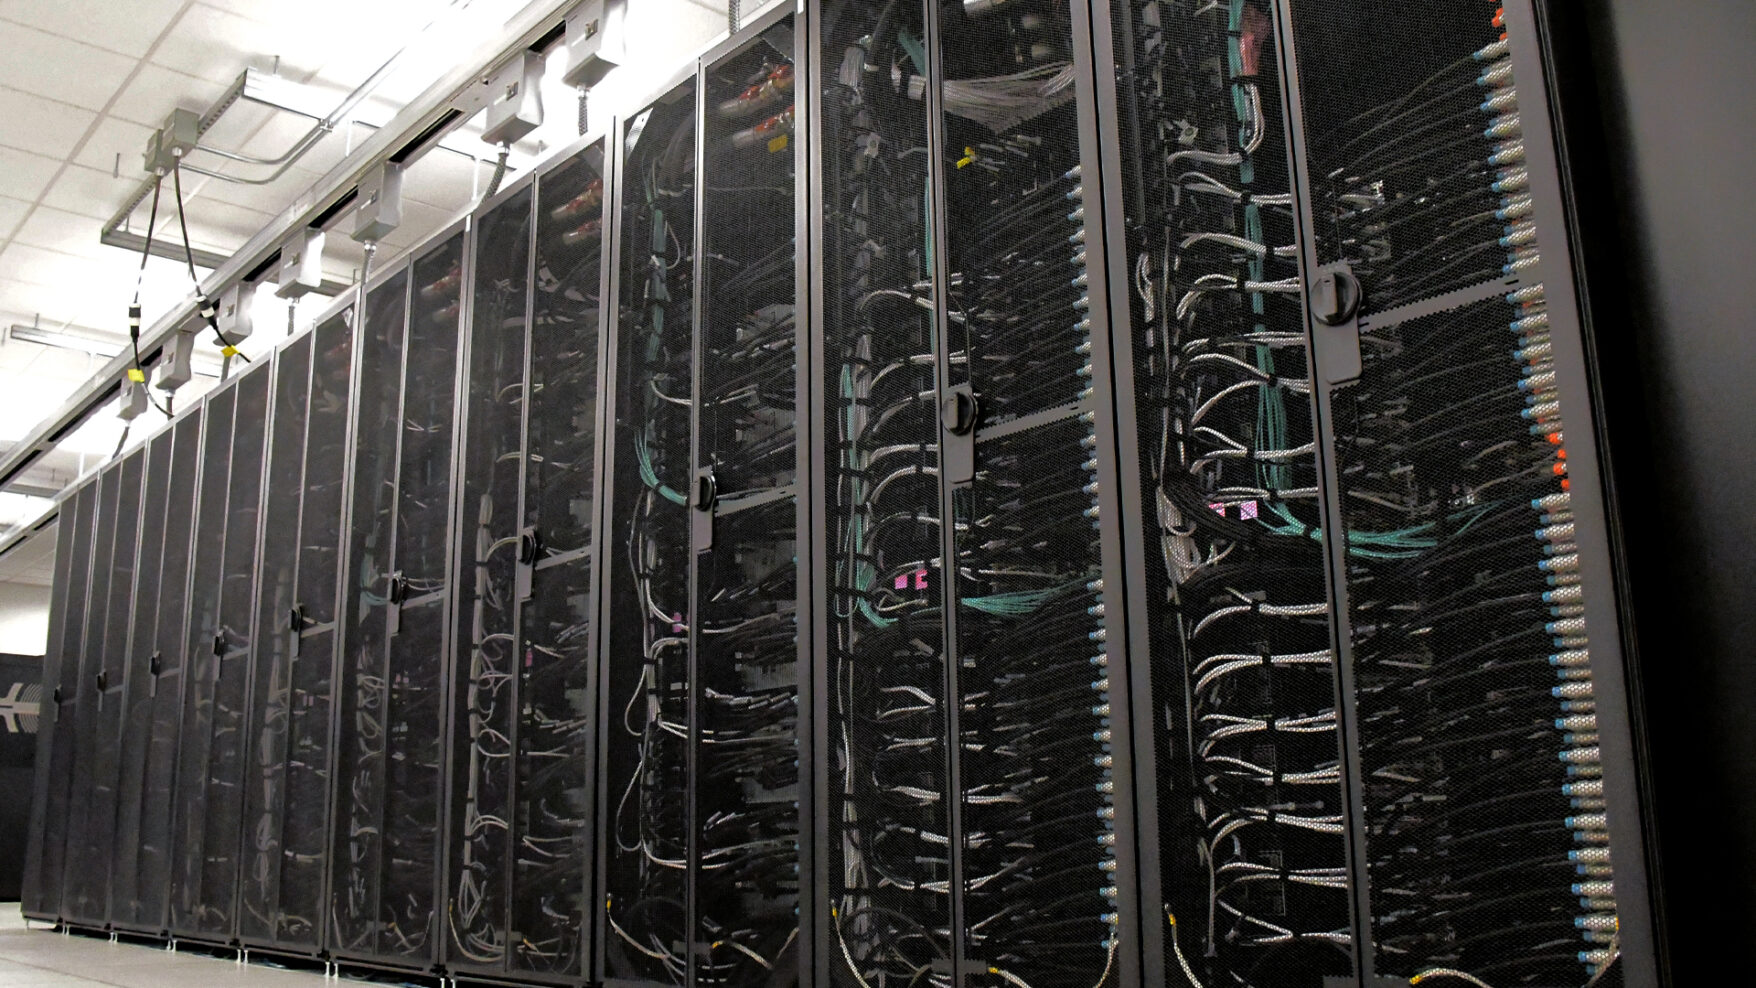 Delta supercomputer at the National Petascale Computing Facility